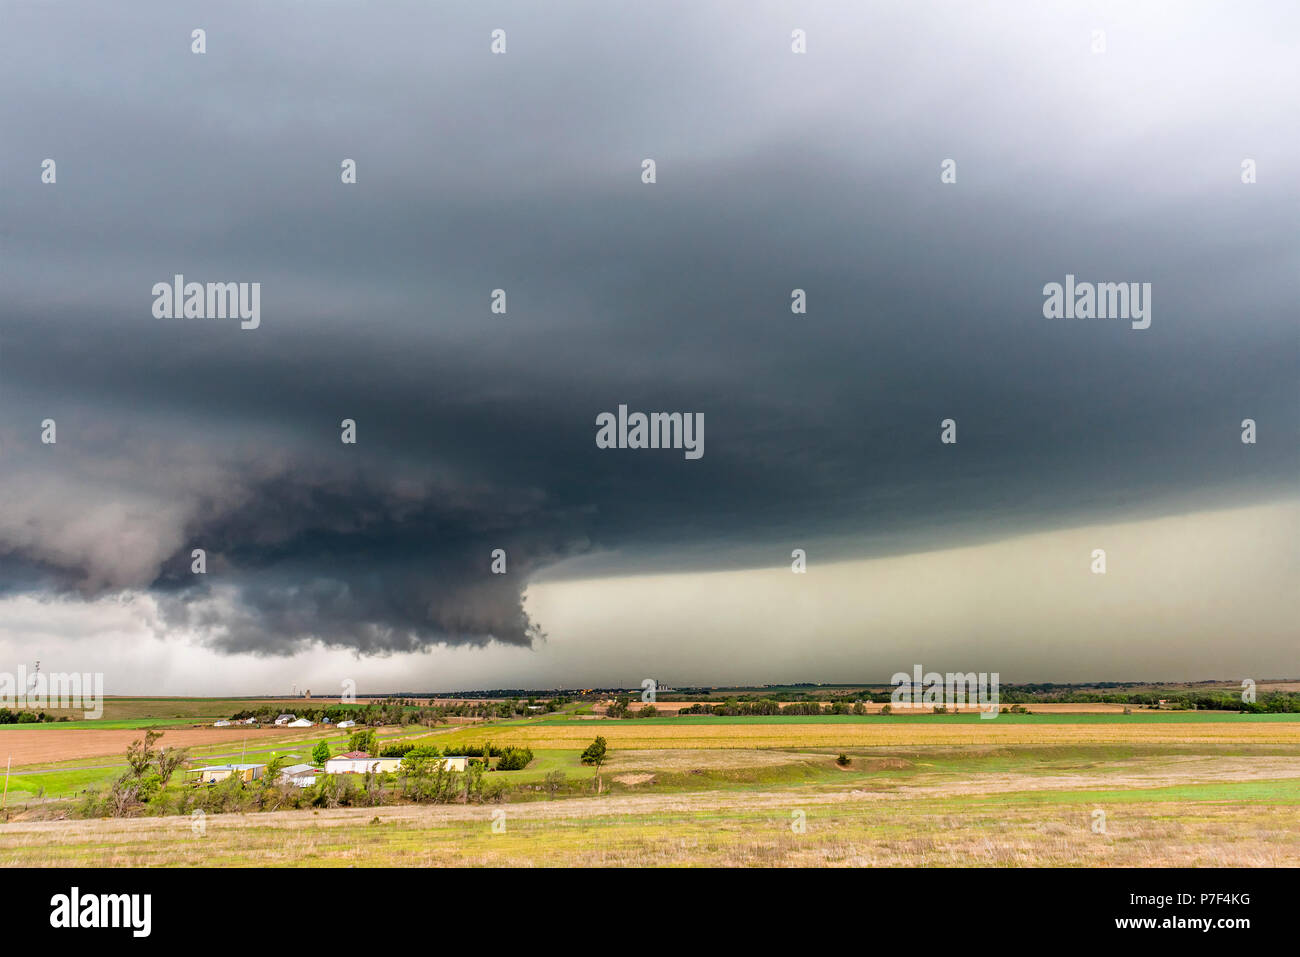 Eine große tornadic mesocyclone supercell Zufluss saugt Energie wie es beginnt in einem Tornado zu verwandeln. Stockfoto